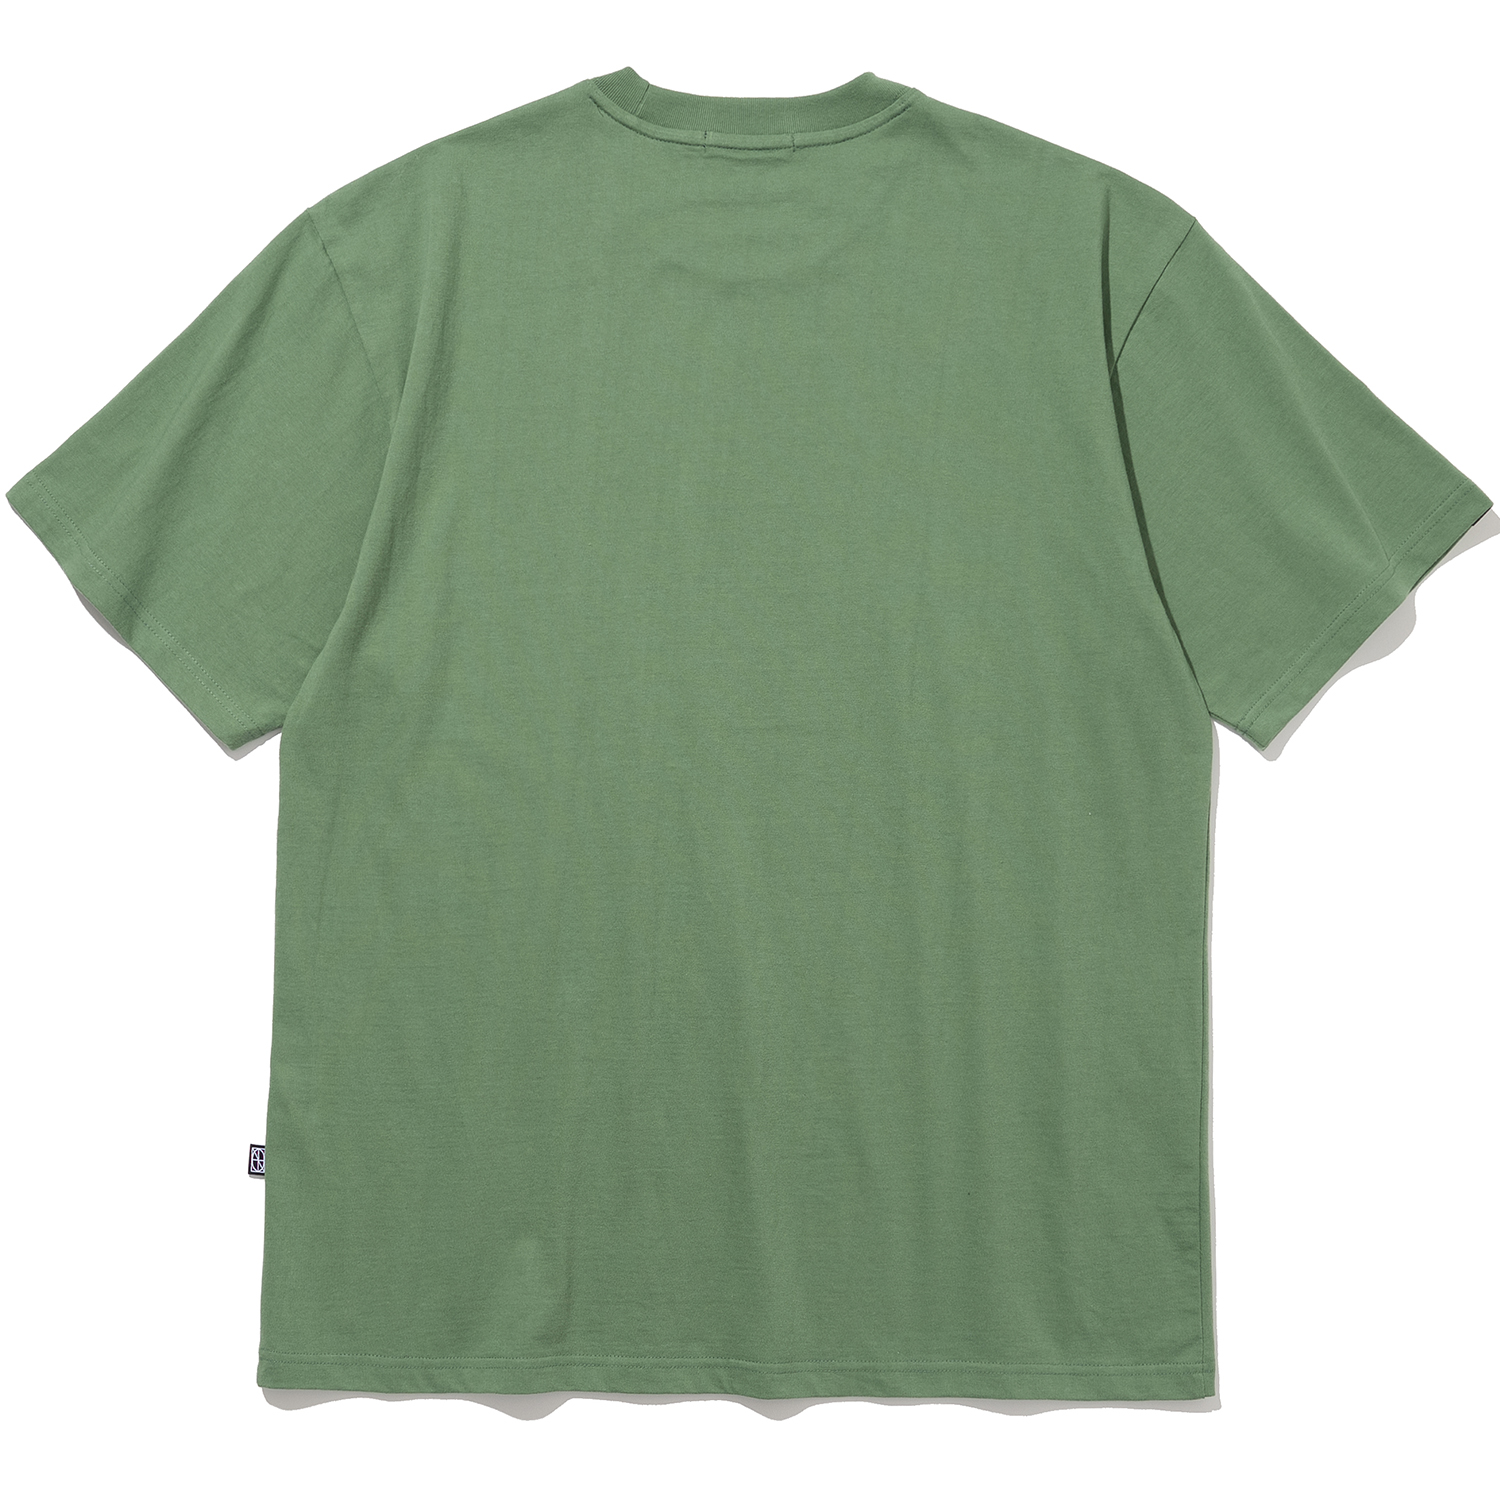 Blur Logo T-Shirts - Green,NOT4NERD